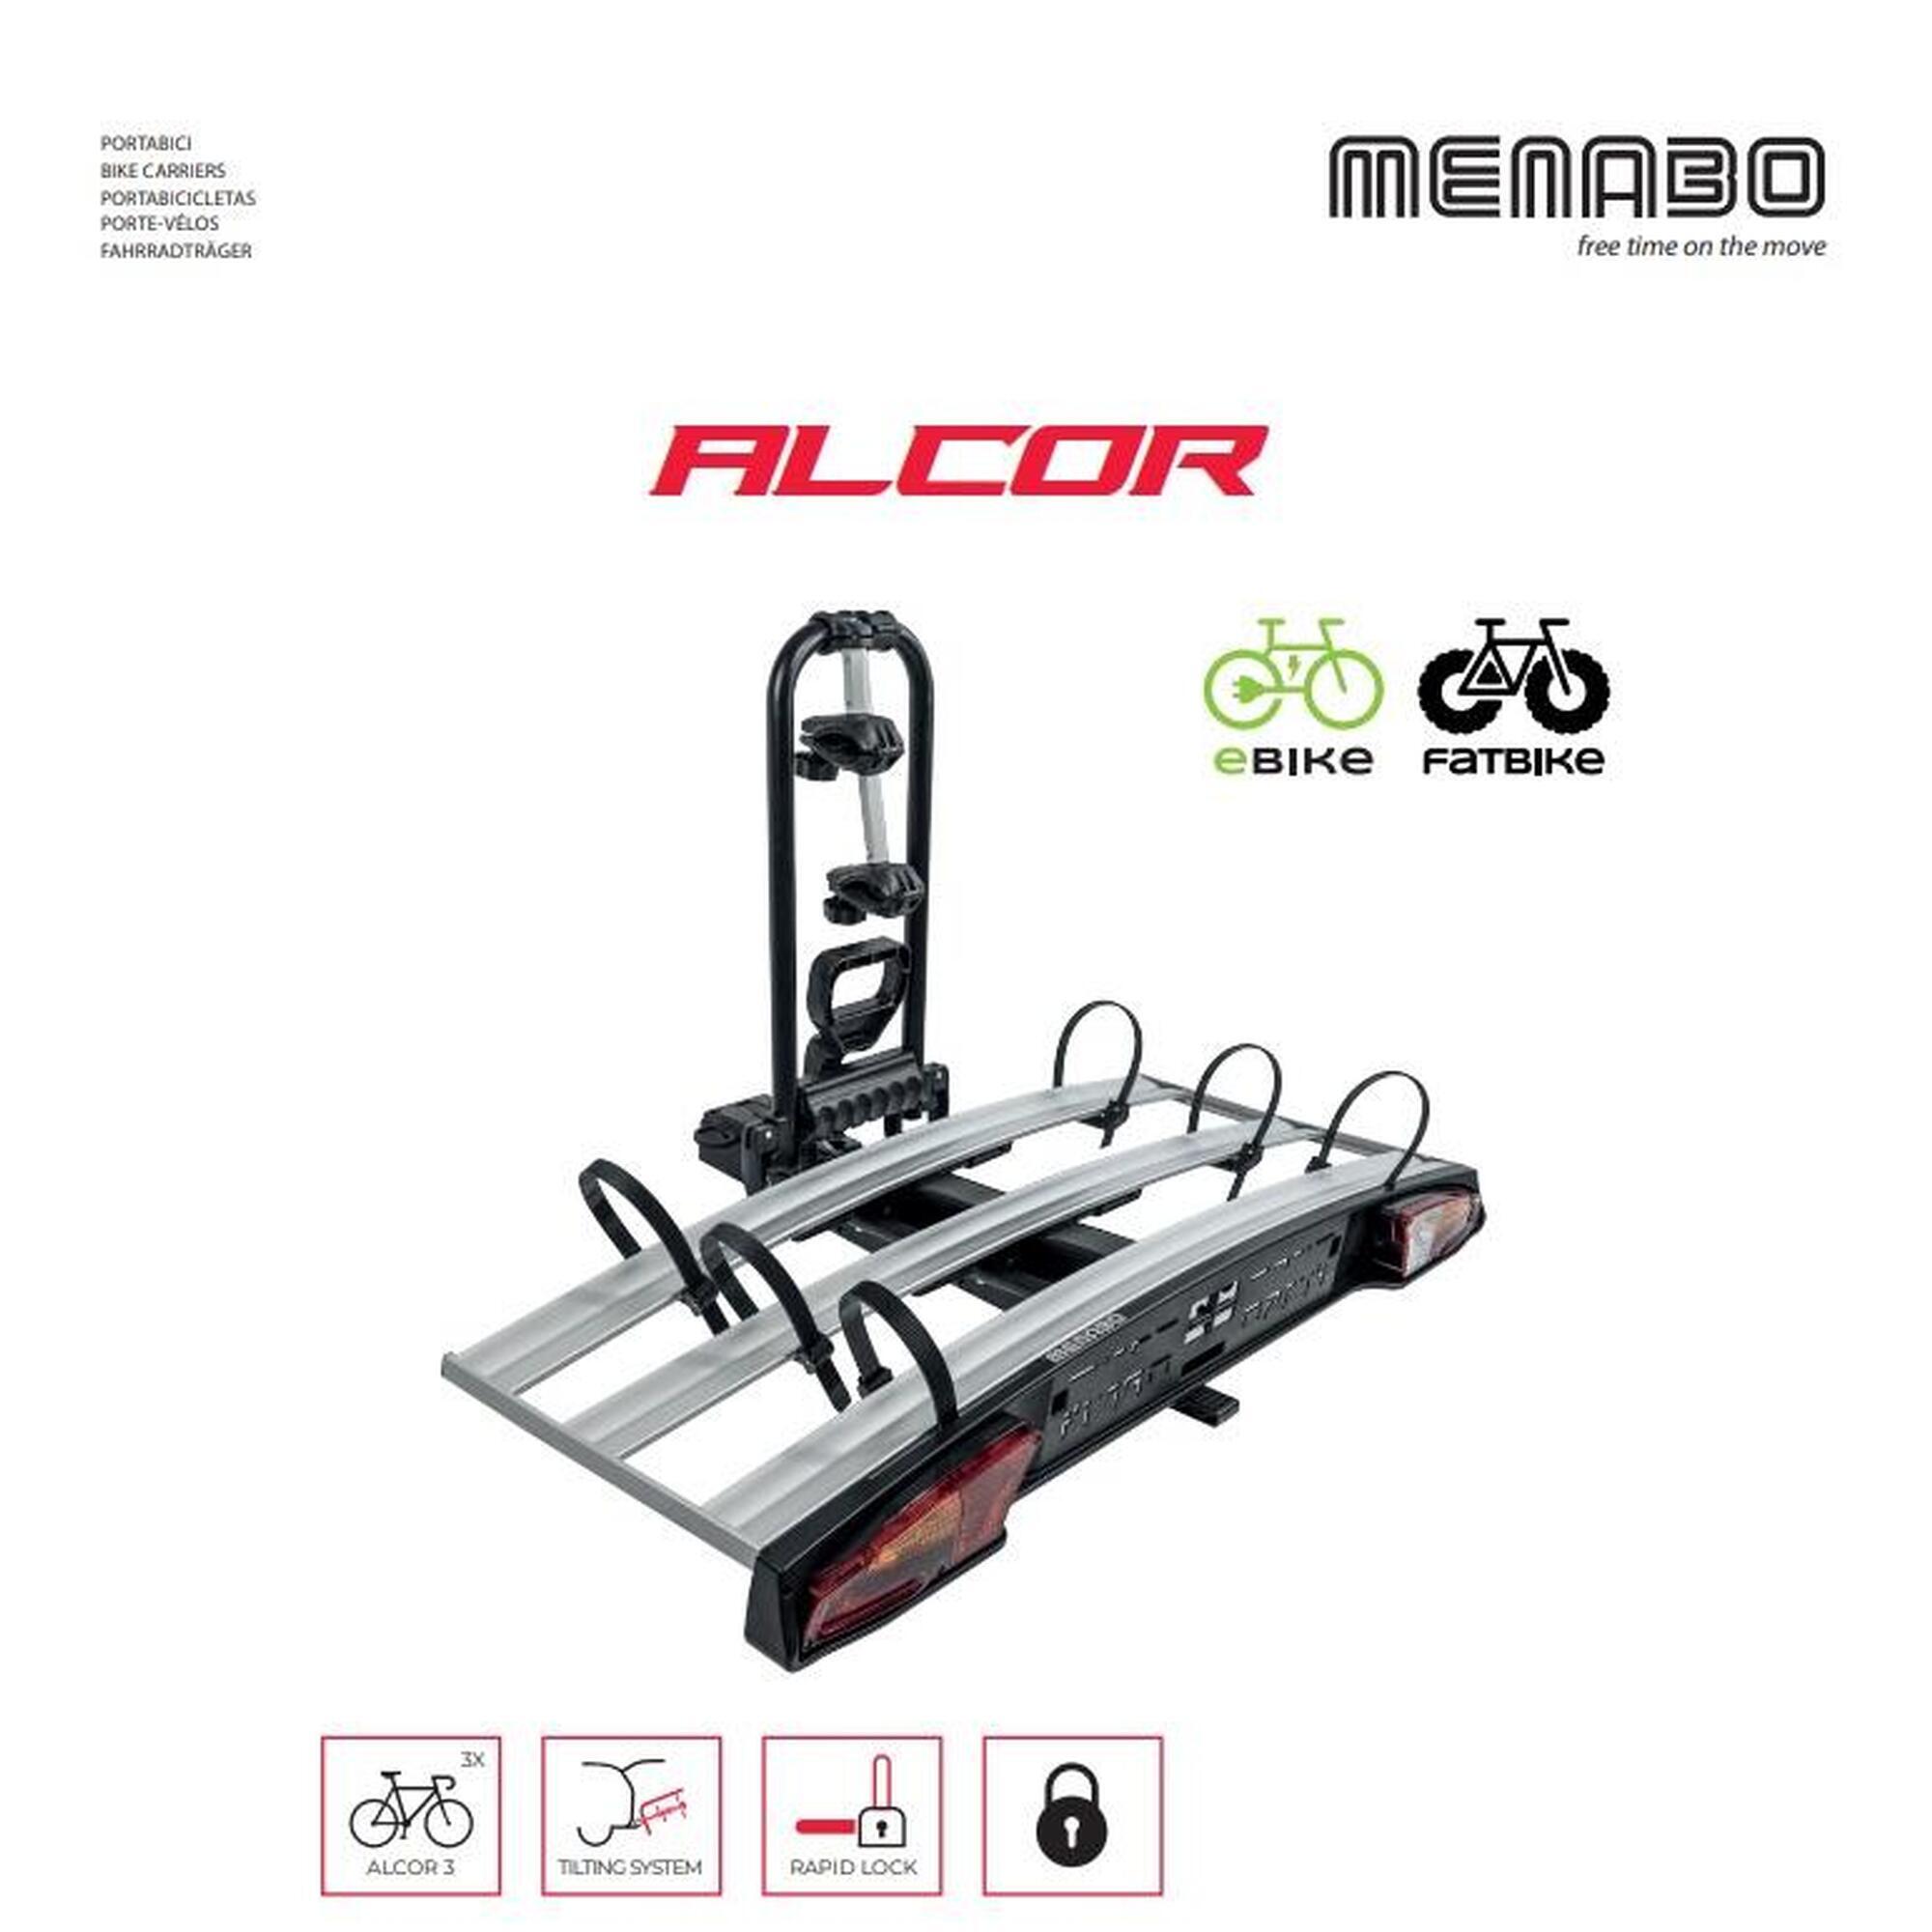 Porta Bici per Gancio Traino auto ALCOR 3 per 3 Bici o 2 Fat Bike o E-Bike